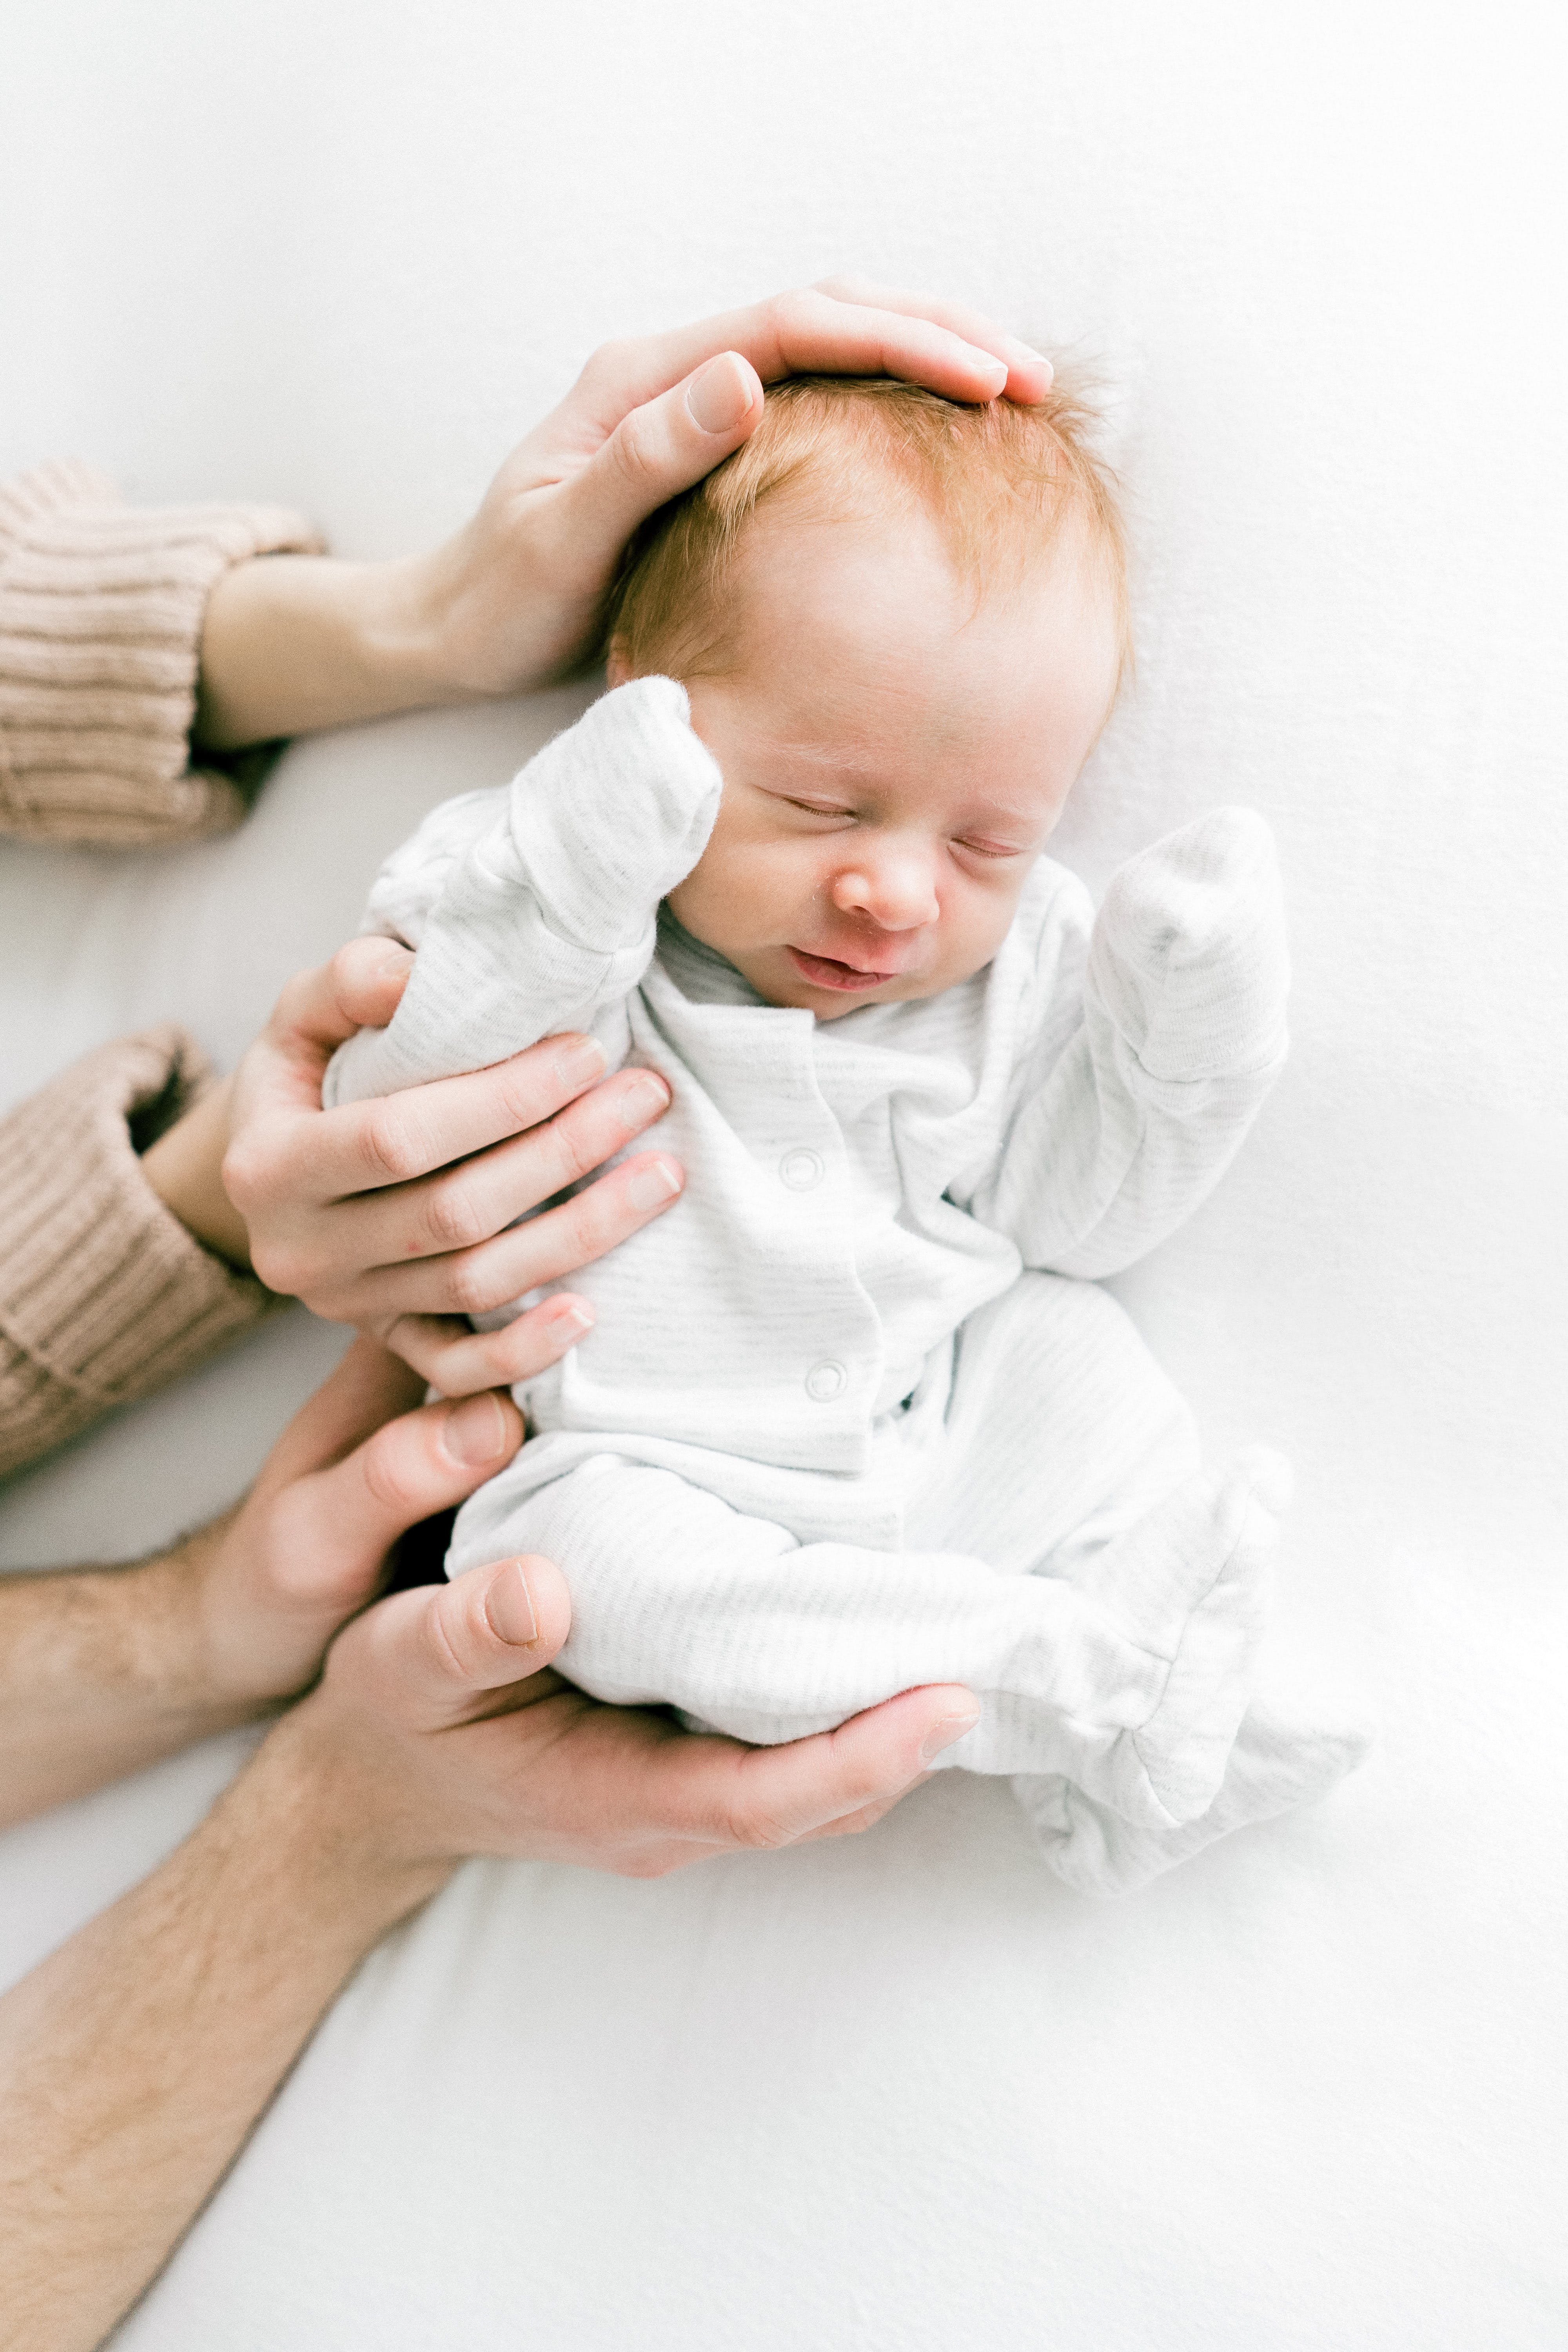 Hände halten ein kleines Baby | Quelle: Pexels